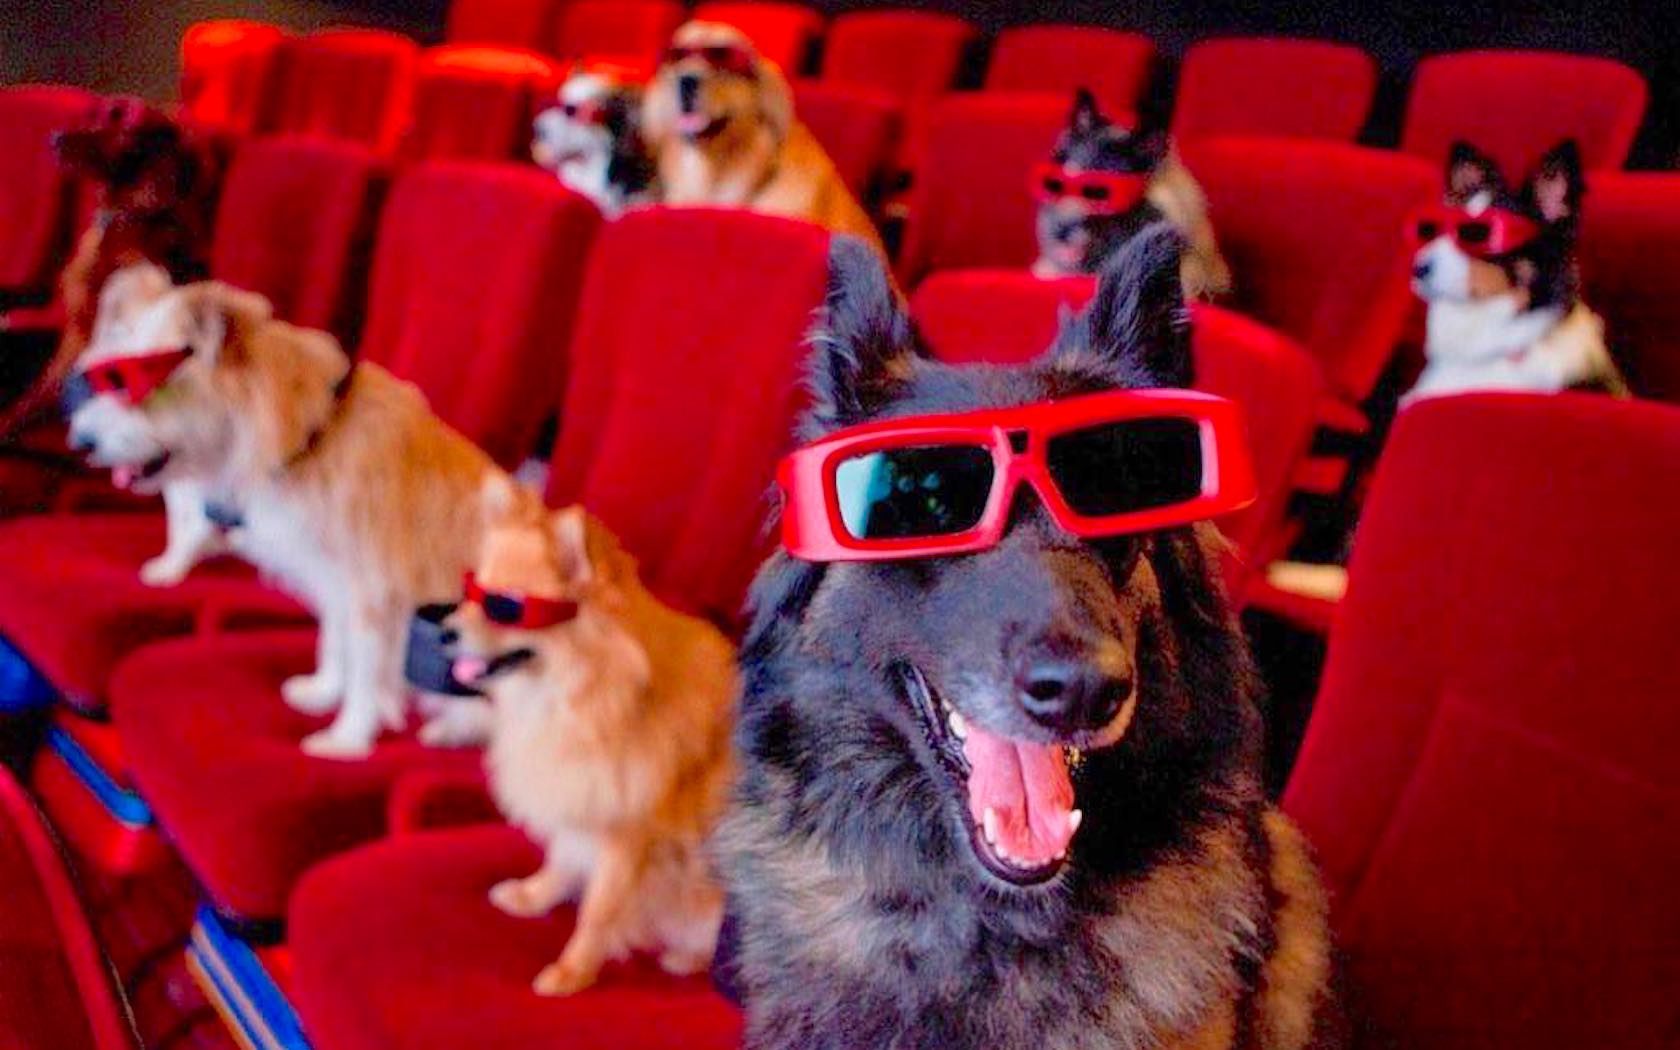 K9 Cinemas is a dog friendly cinema